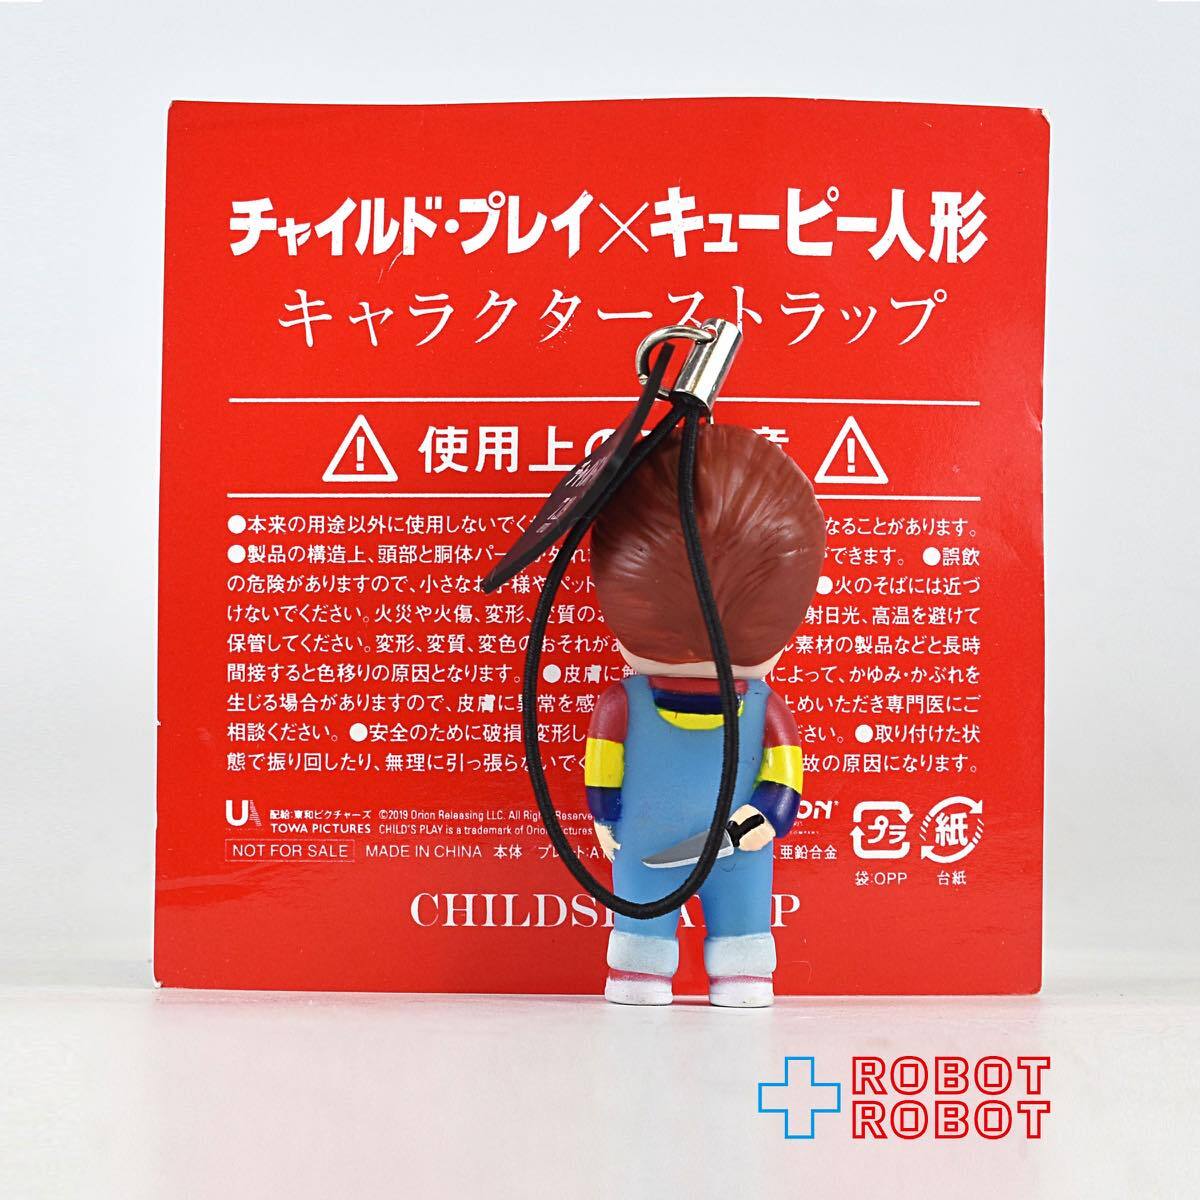 ムビチケ特典 チャイルド・プレイ x キューピー人形 チャッキー キャラクターストラップ